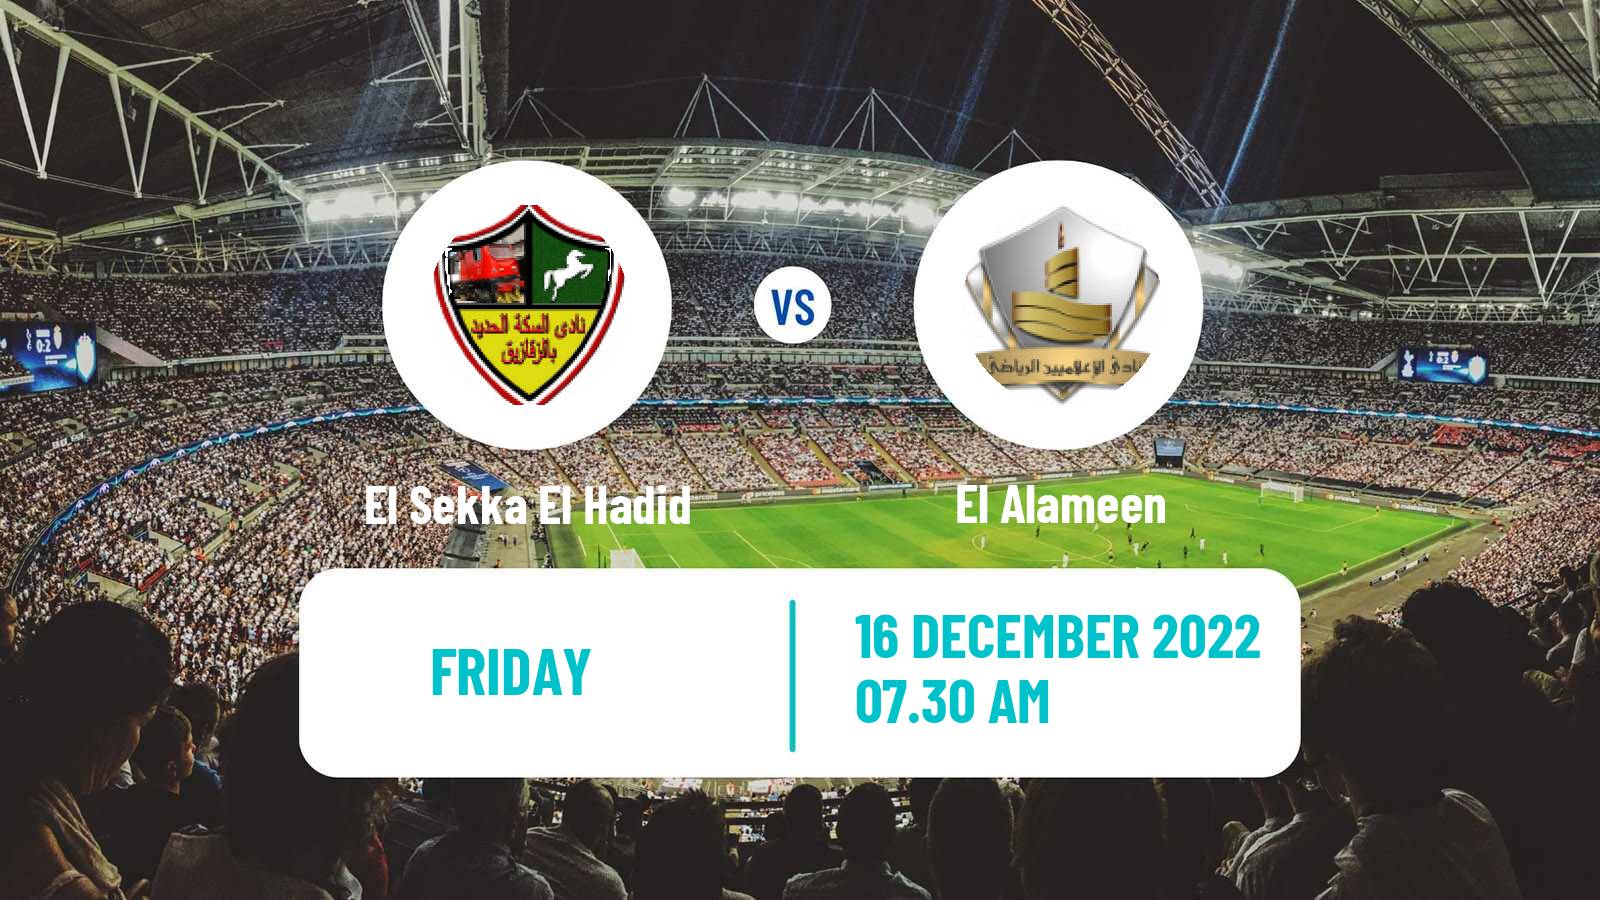 Soccer Egyptian Division 2 - Group B El Sekka El Hadid - El Alameen